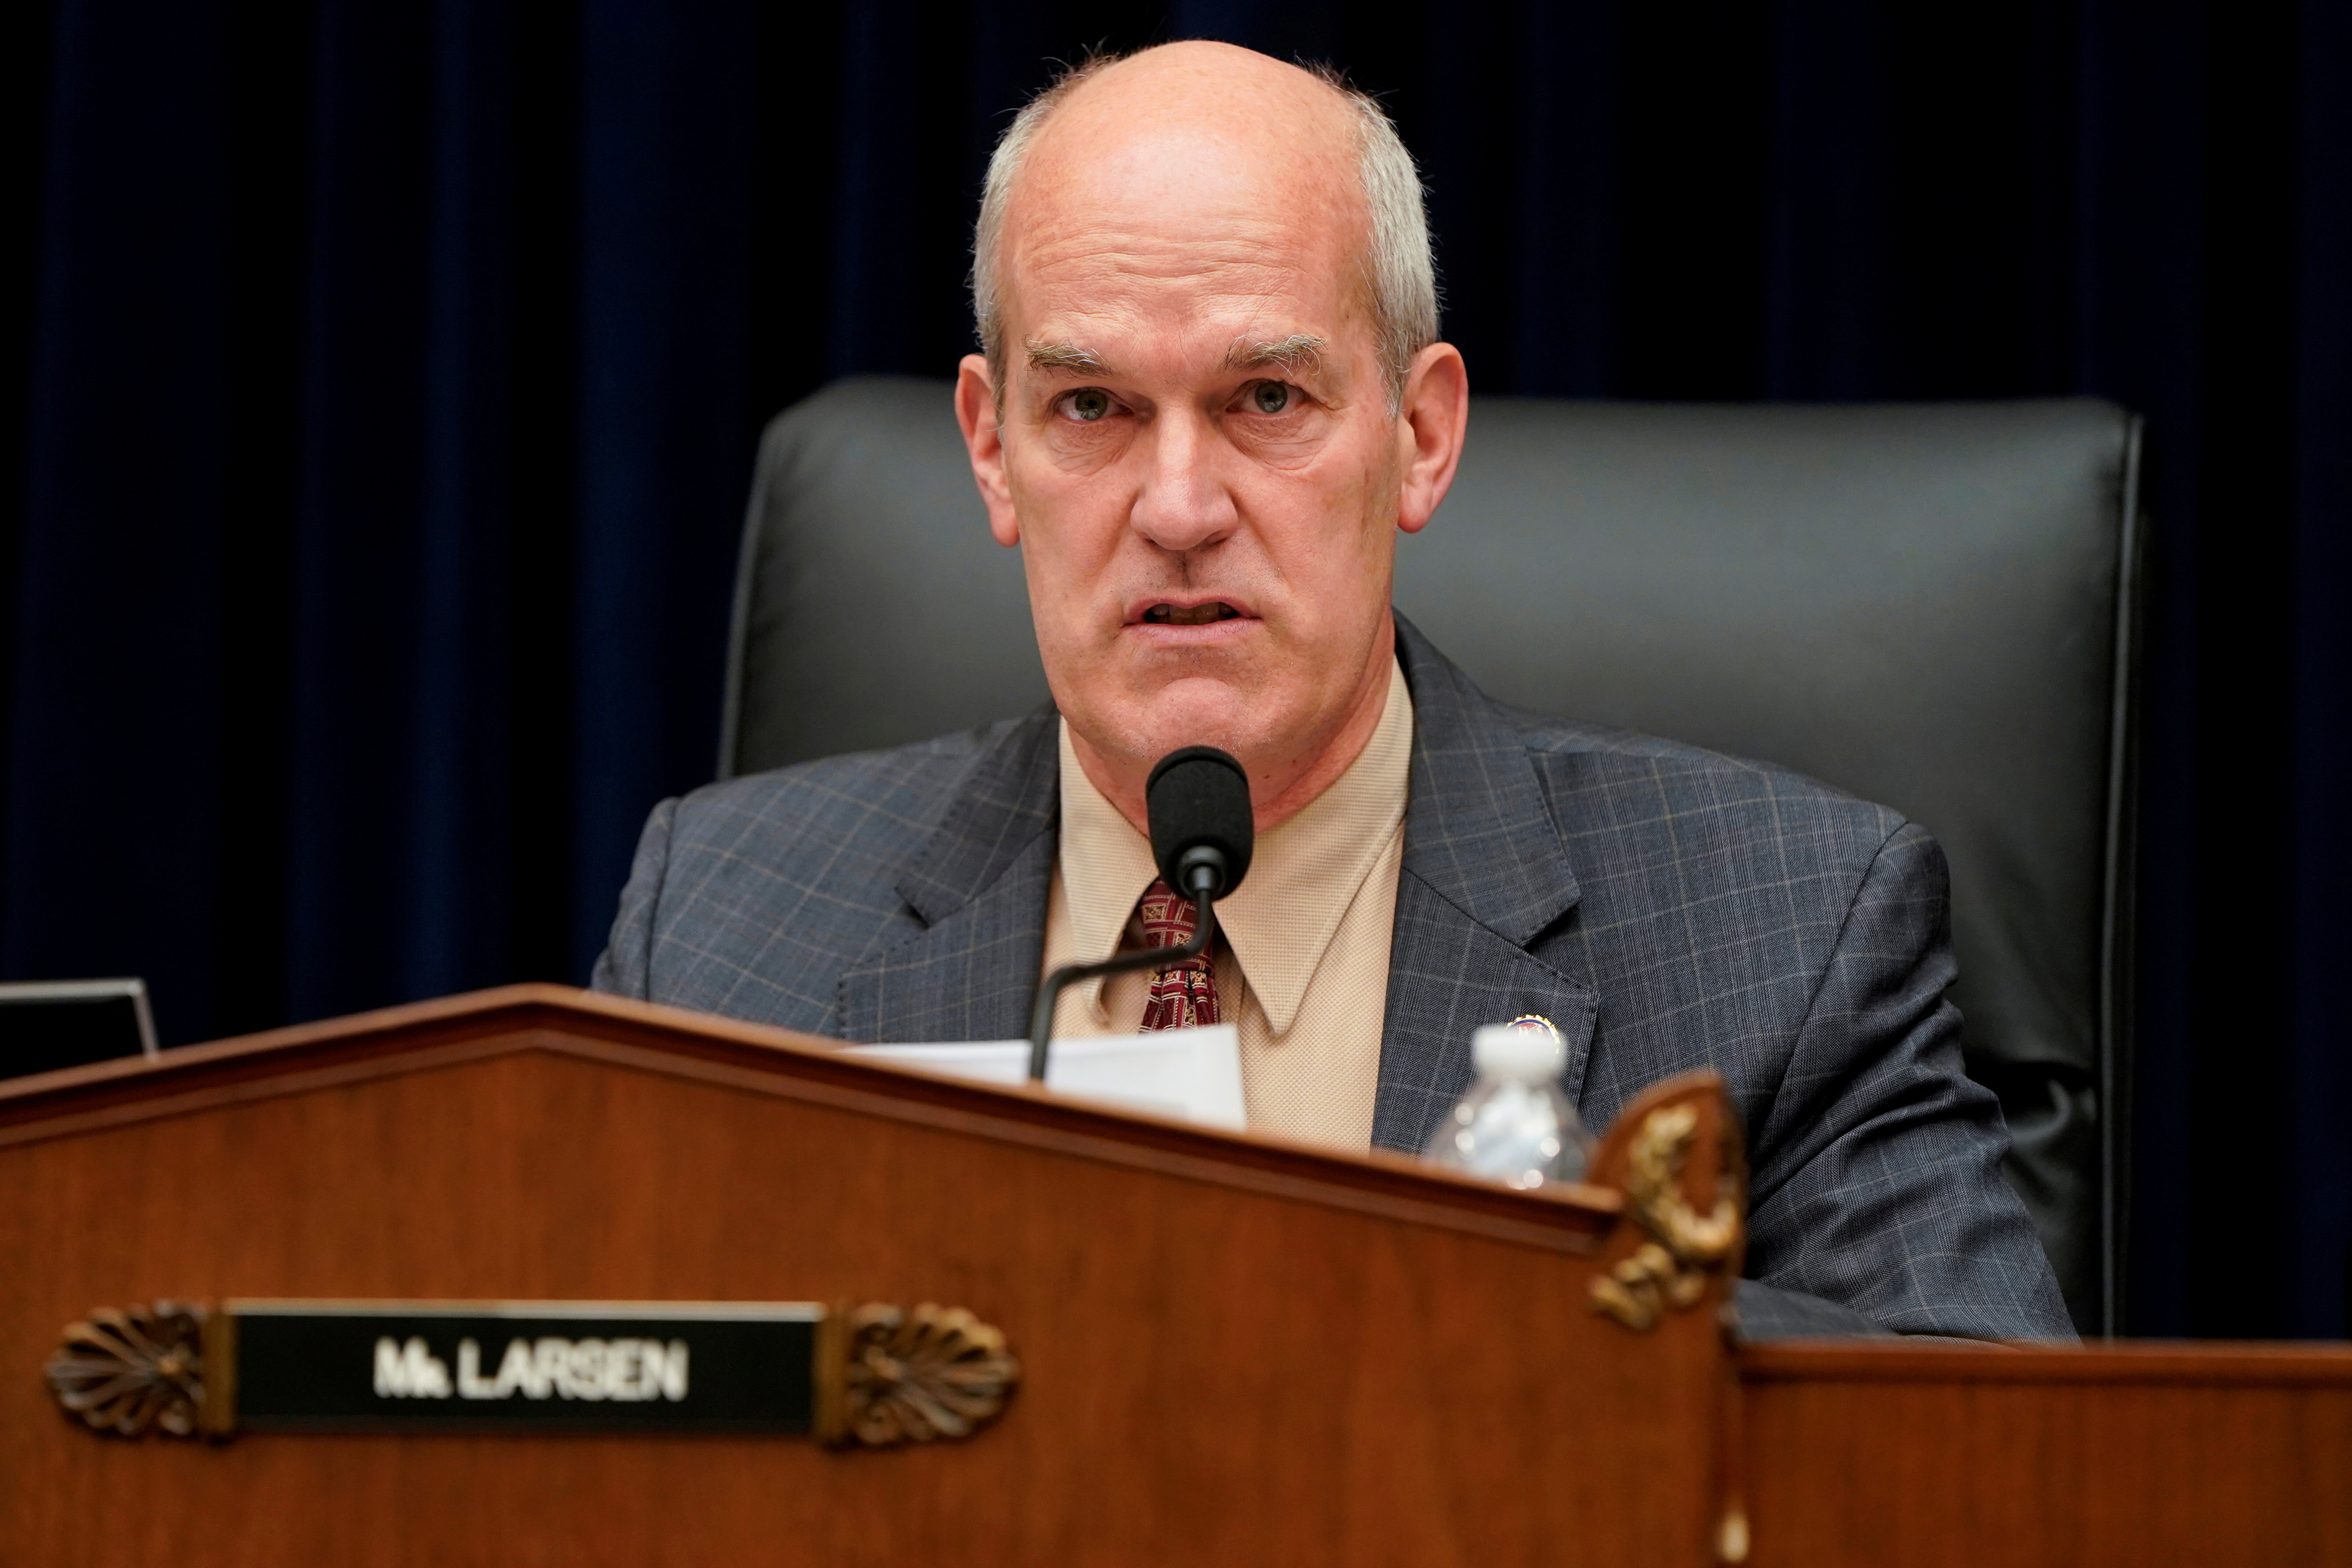 U.S. Representative Rick Larsen speaks during a hearing in Washington.